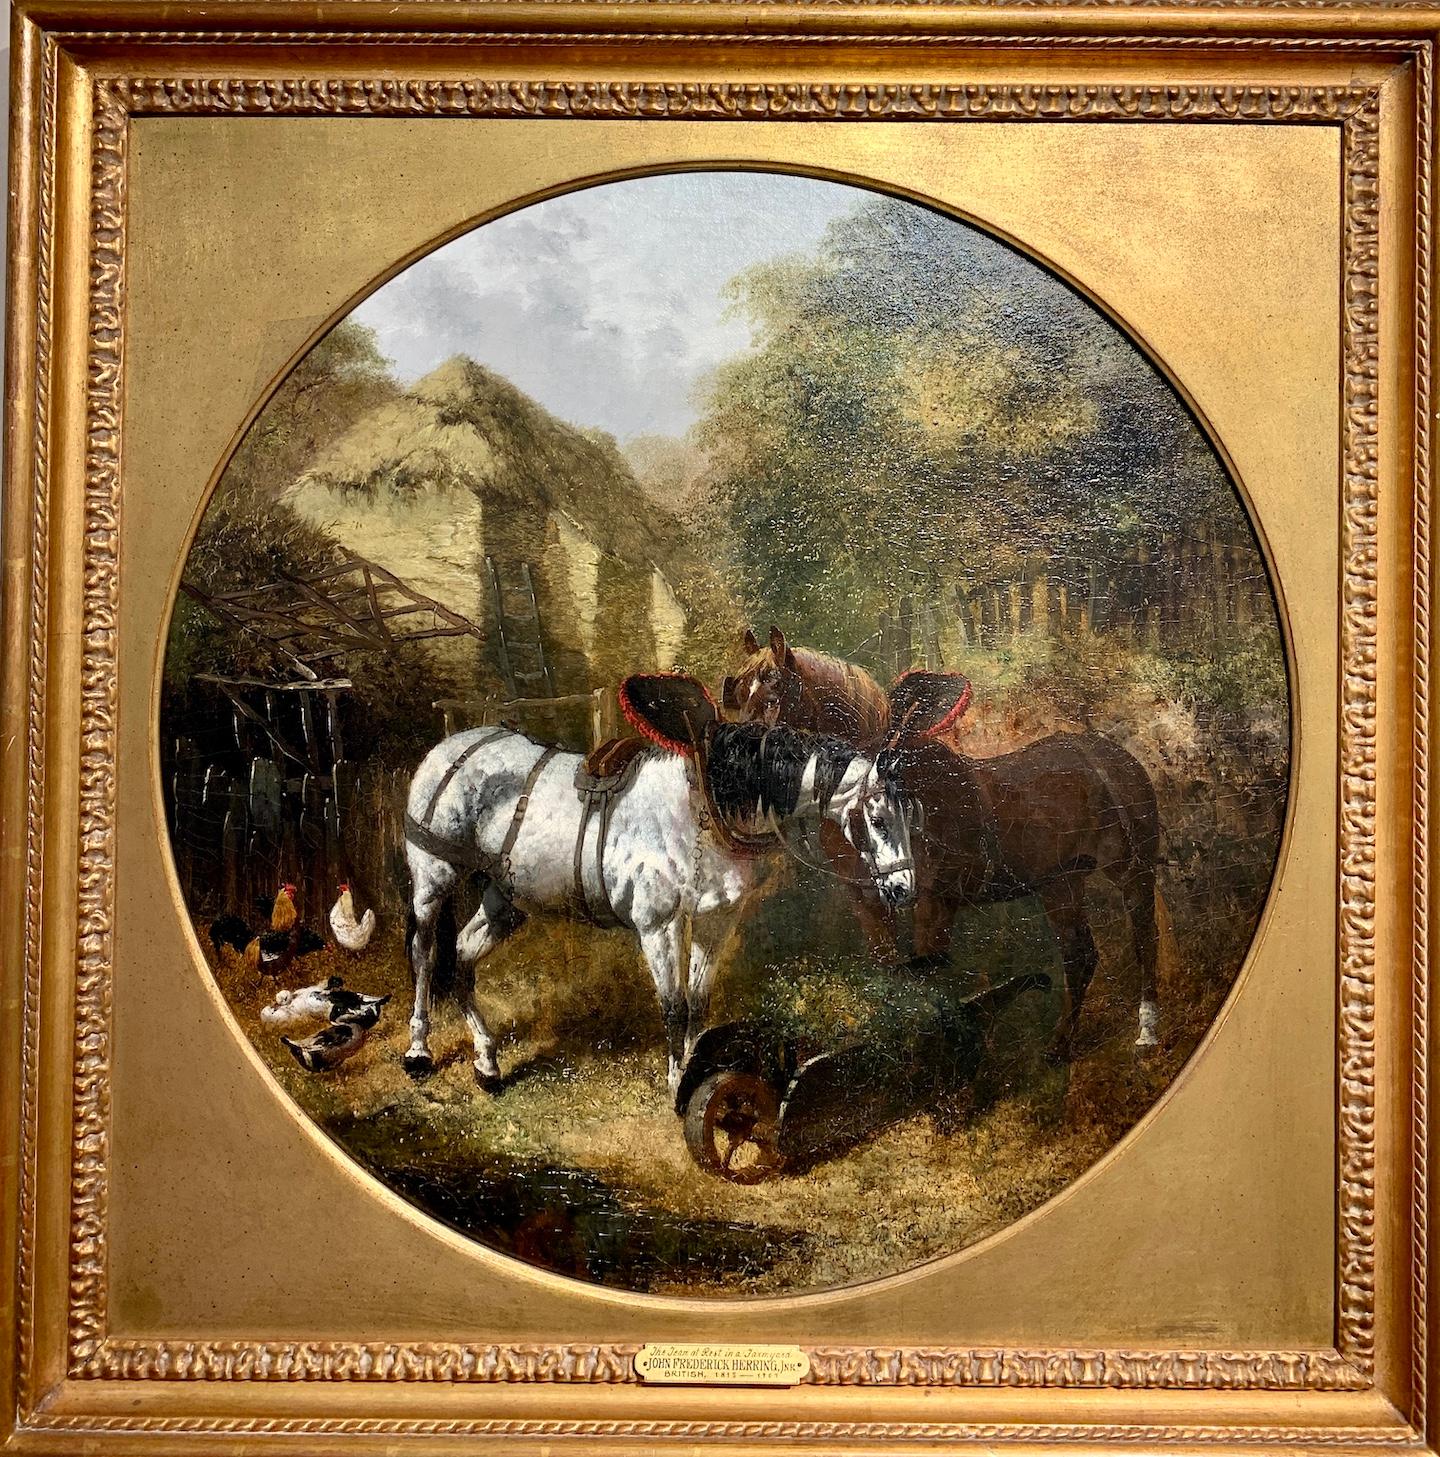 Antike englische Rollpferden aus dem 19. Jahrhundert in einer Bauernhoflandschaft mit Hütte.